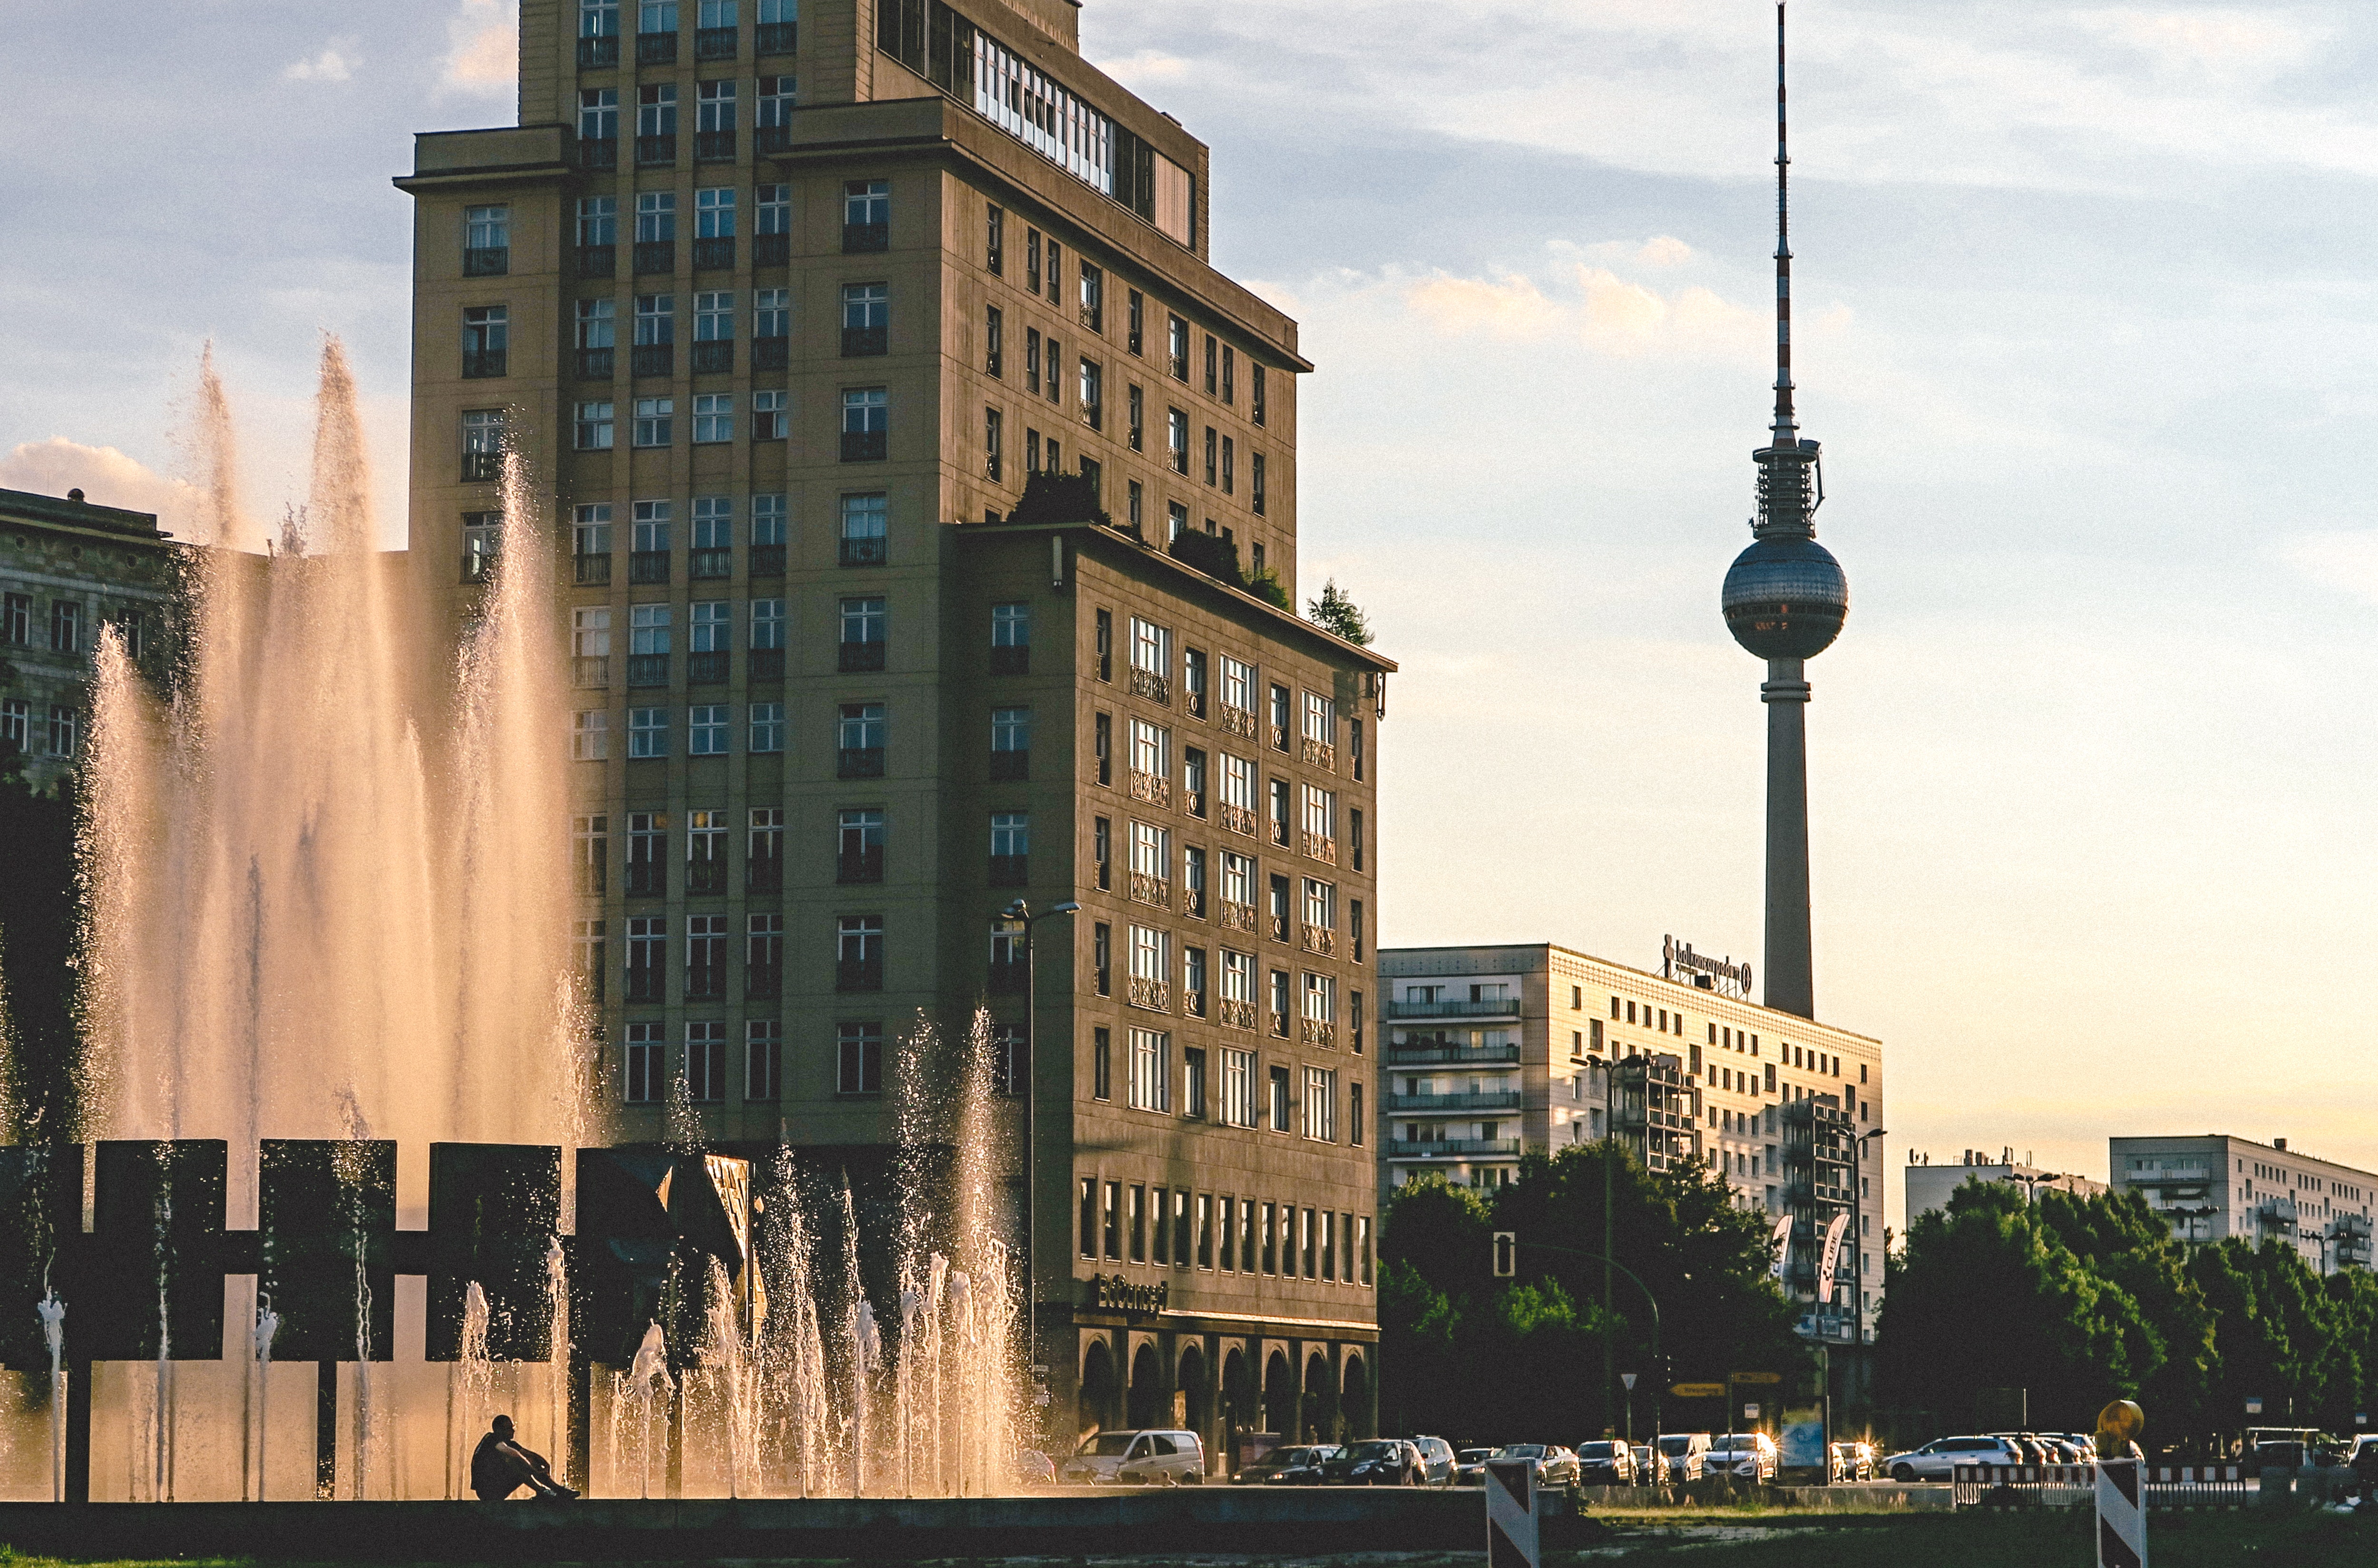 Torre de concreto gris. Berlin, Berlin. Alemania. (Cortesía de Pexels)